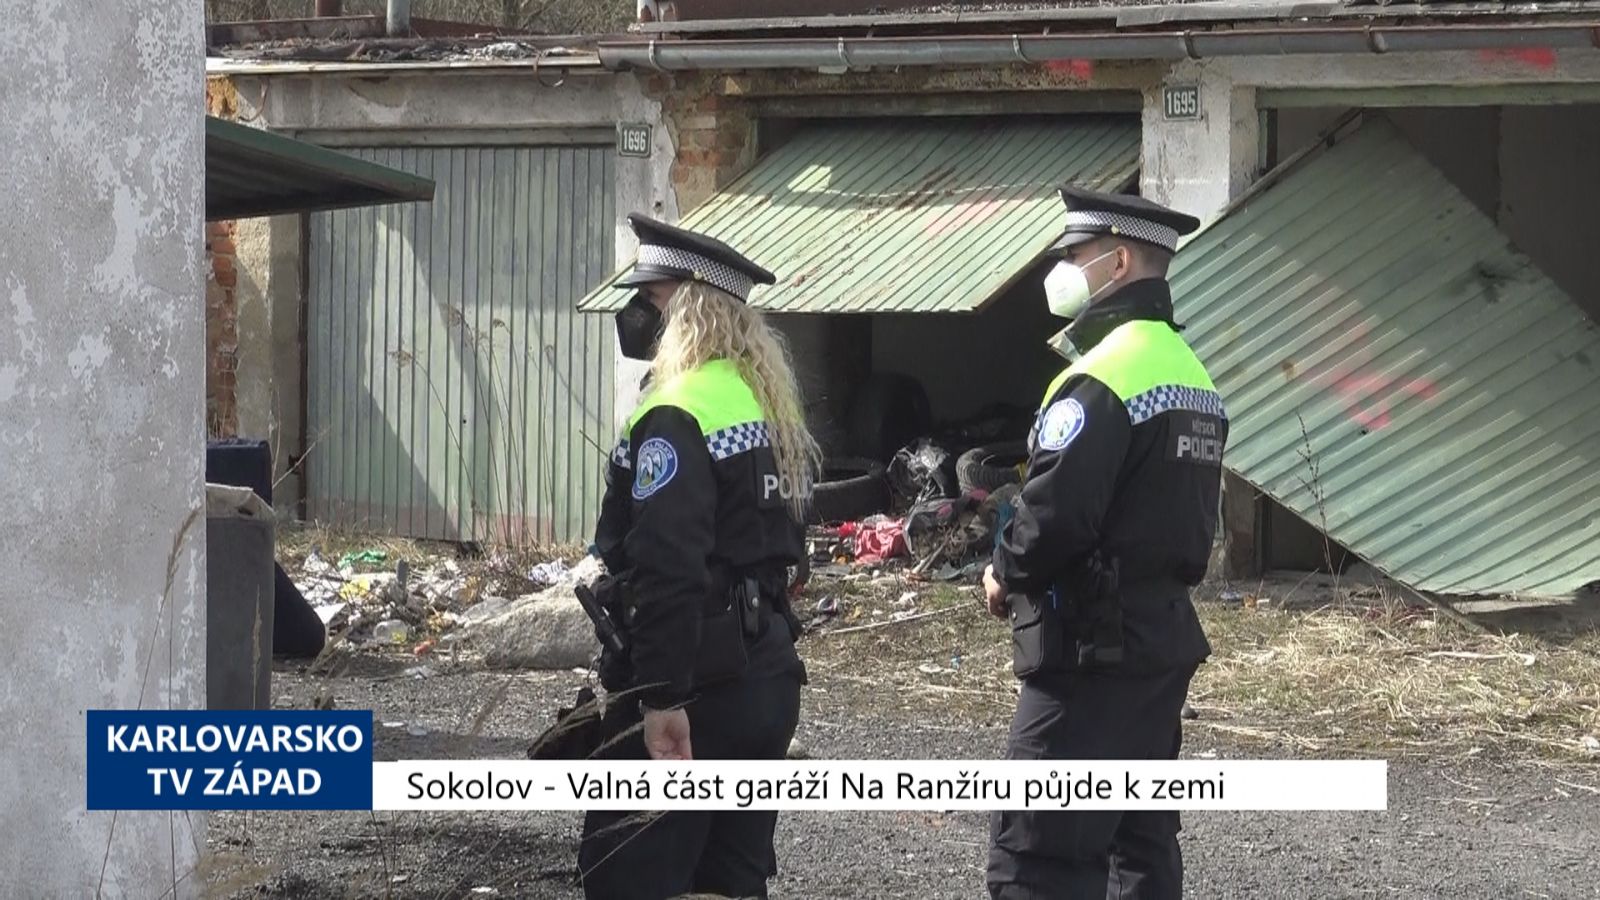 Sokolov: Valná část garáží Na Ranžíru půjde k zemi (TV Západ)